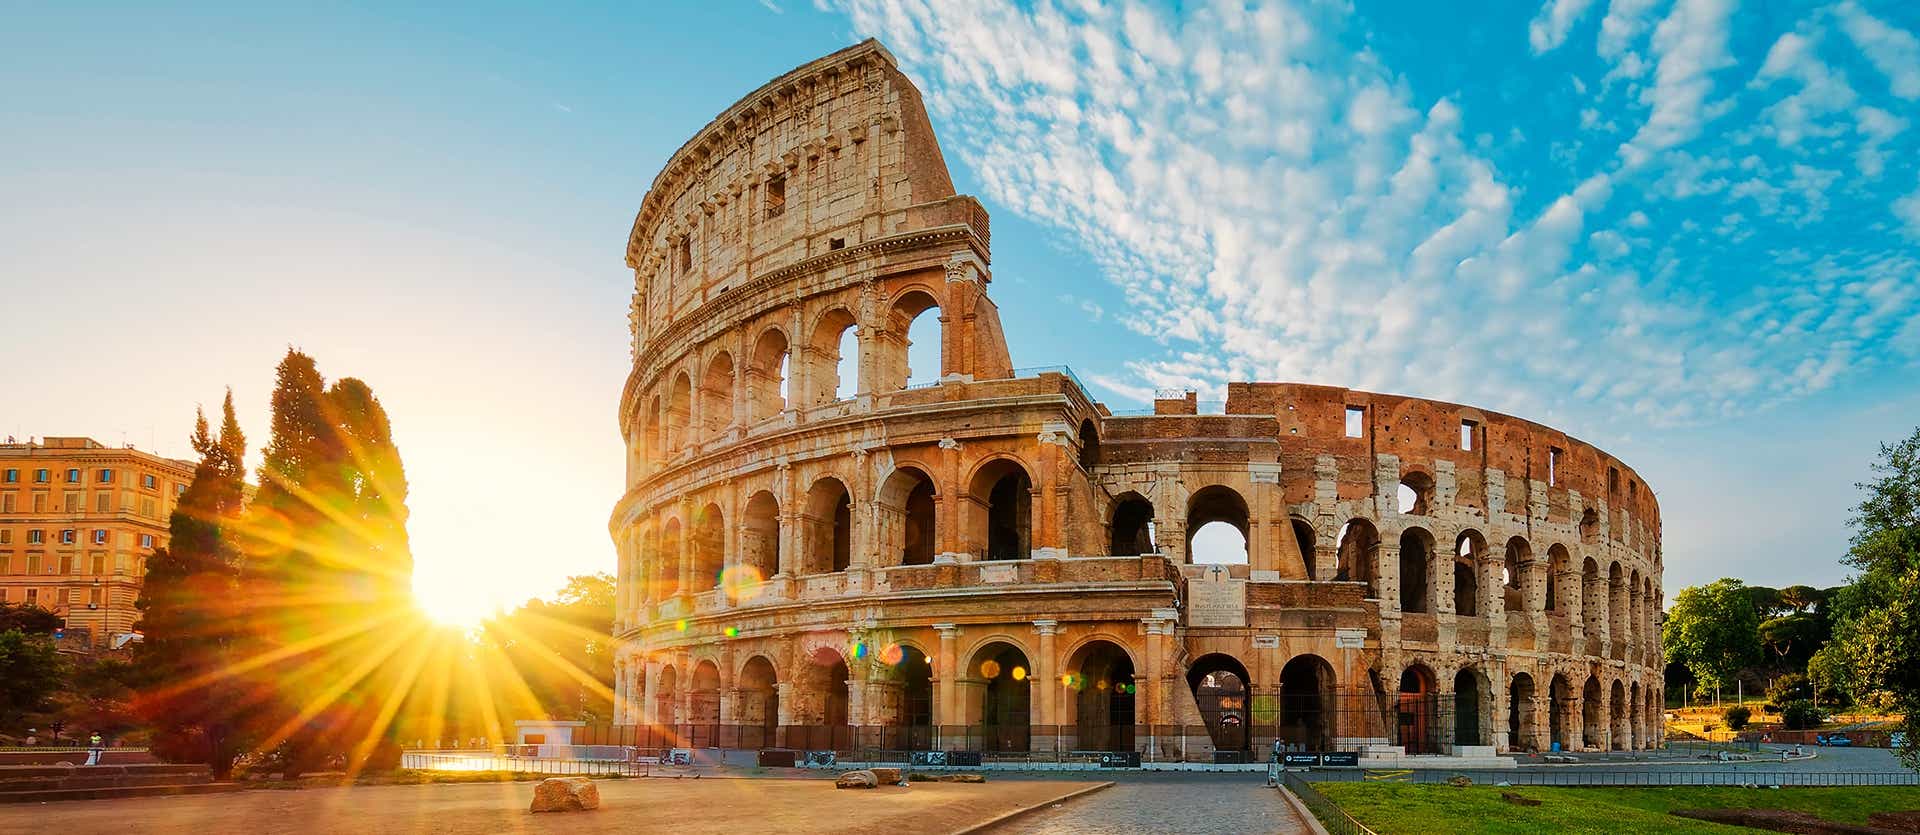 Le Colosseum <span class="iconos separador"></span> Rome